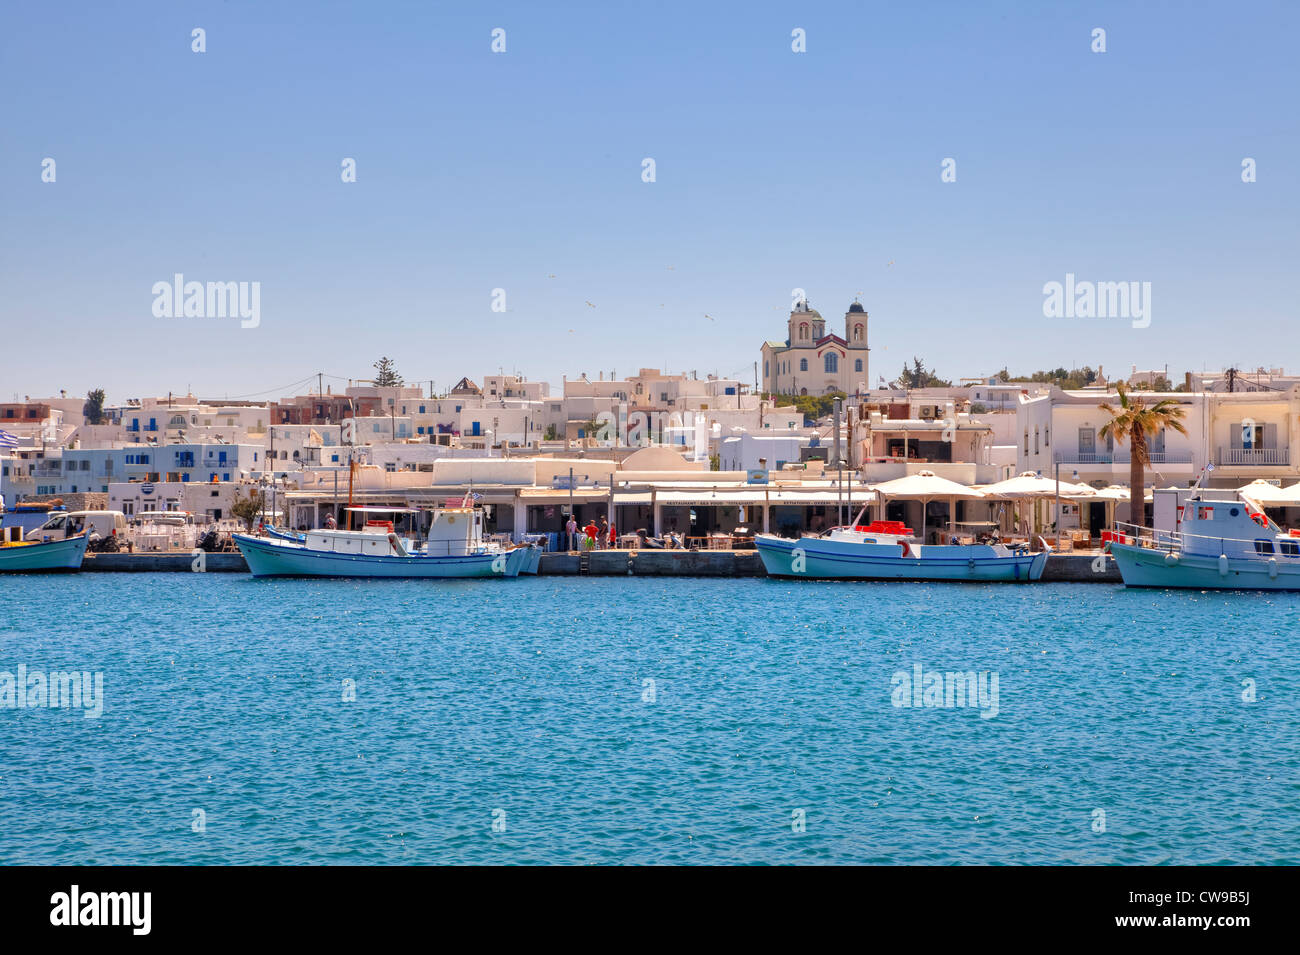 Con vistas a la ciudad antigua y el puerto marítimo de Naoussa, Paros, Grecia Foto de stock